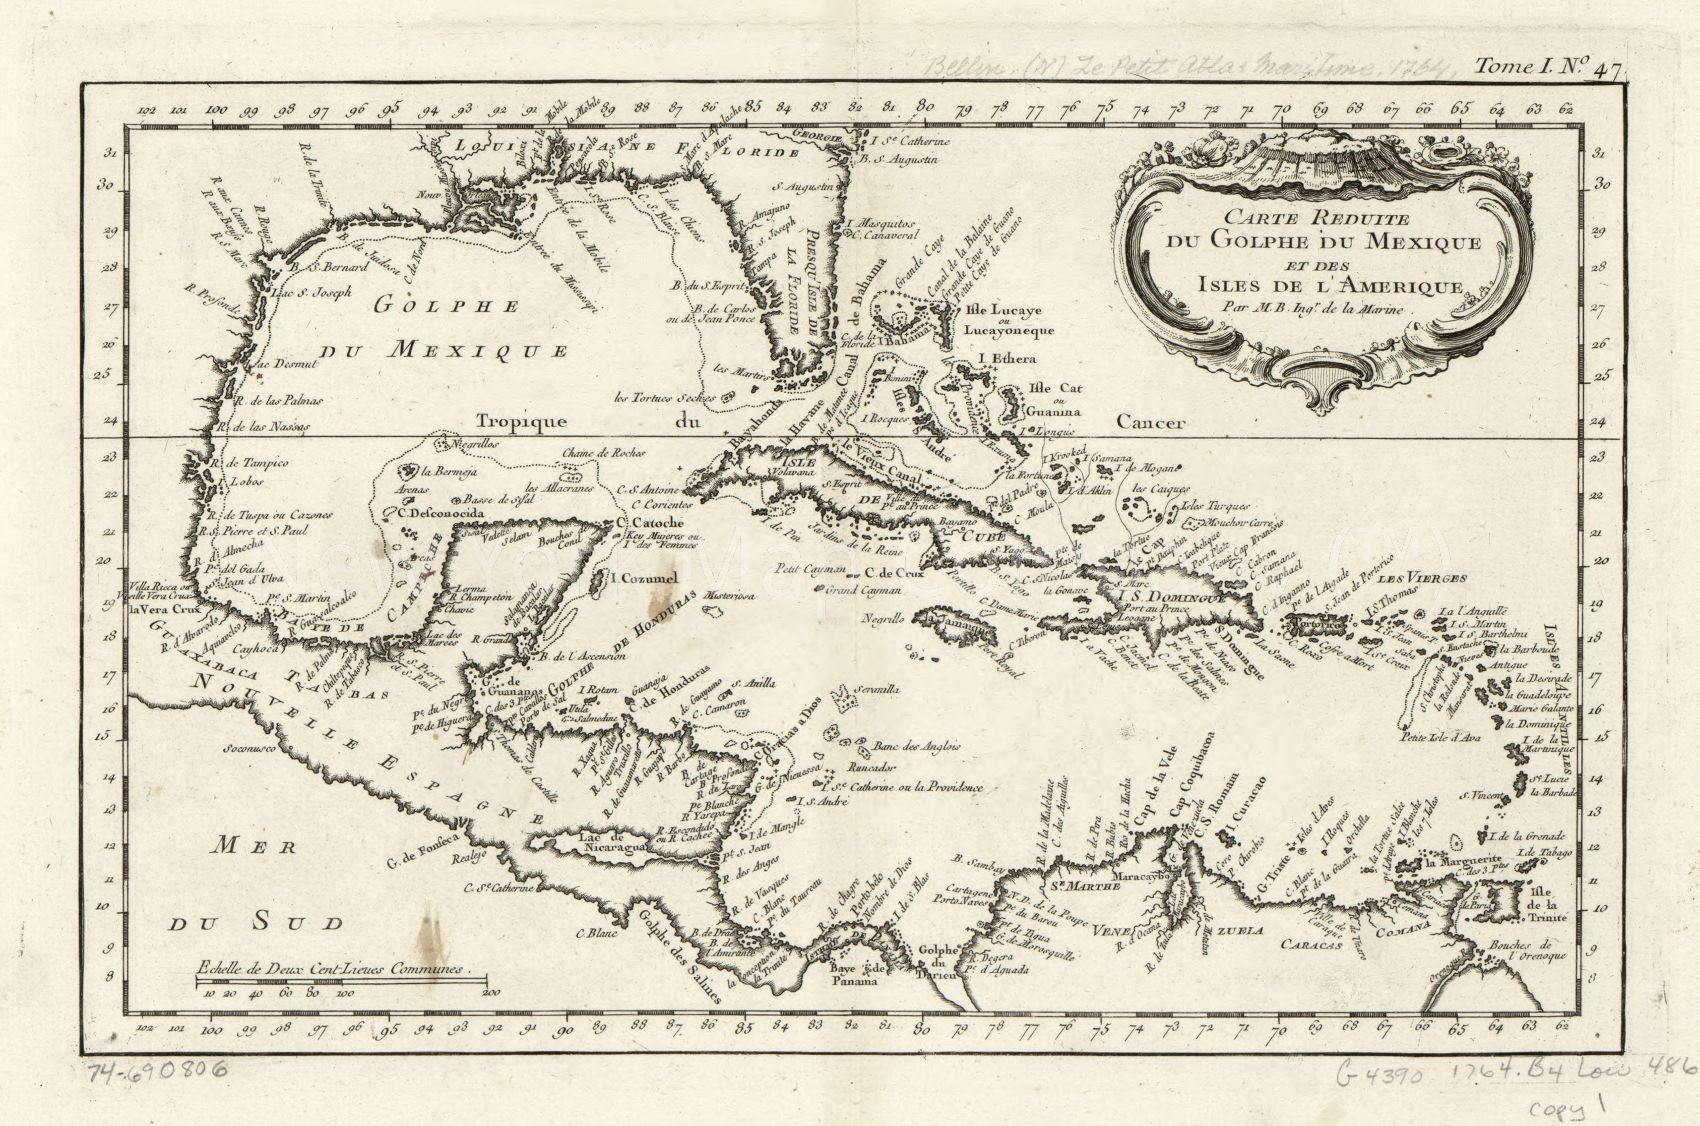 1764 map Carte réduite du Golphe du Mexique et des isles de l'Amérique. Map Subjects: Caribbean Area - New York Map Company